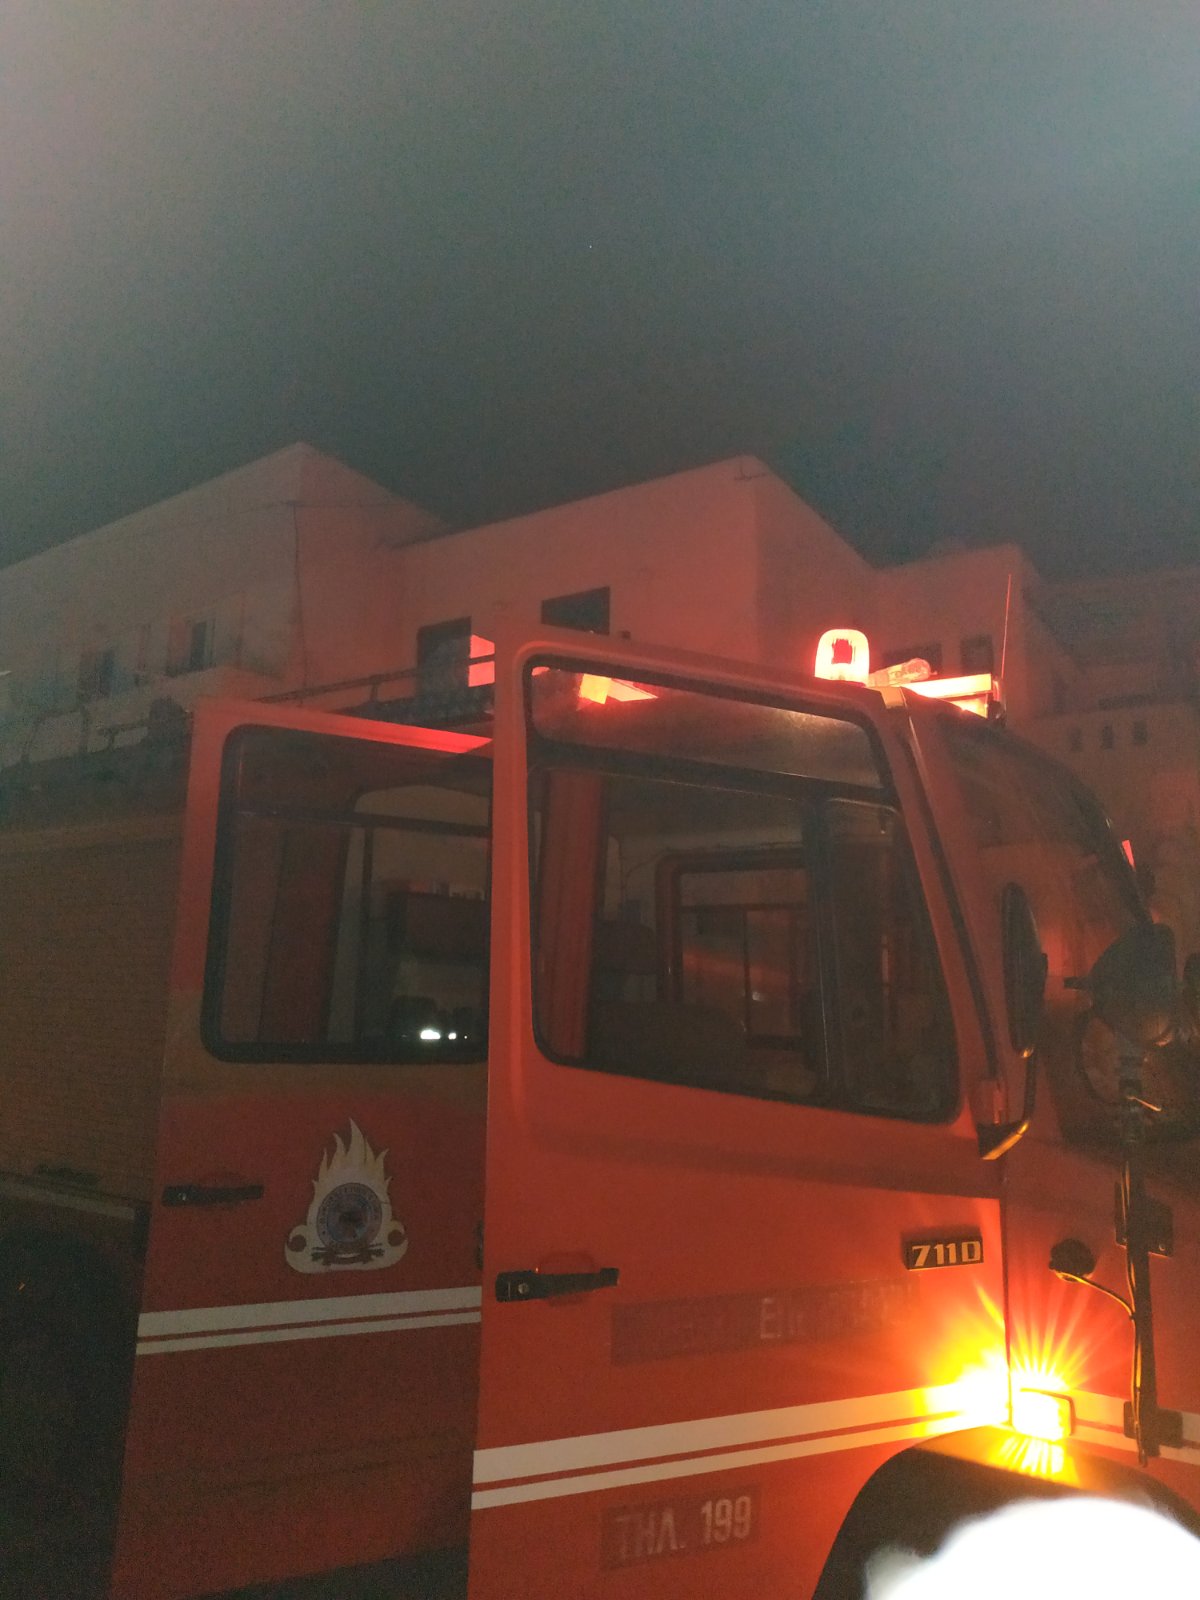 Χώρα Νάξου, βραδινές ώρες σήμερα: Φωτιά εκδηλώθηκε στην εκκλησία των Ταξιαρχών - (φωτο & video)